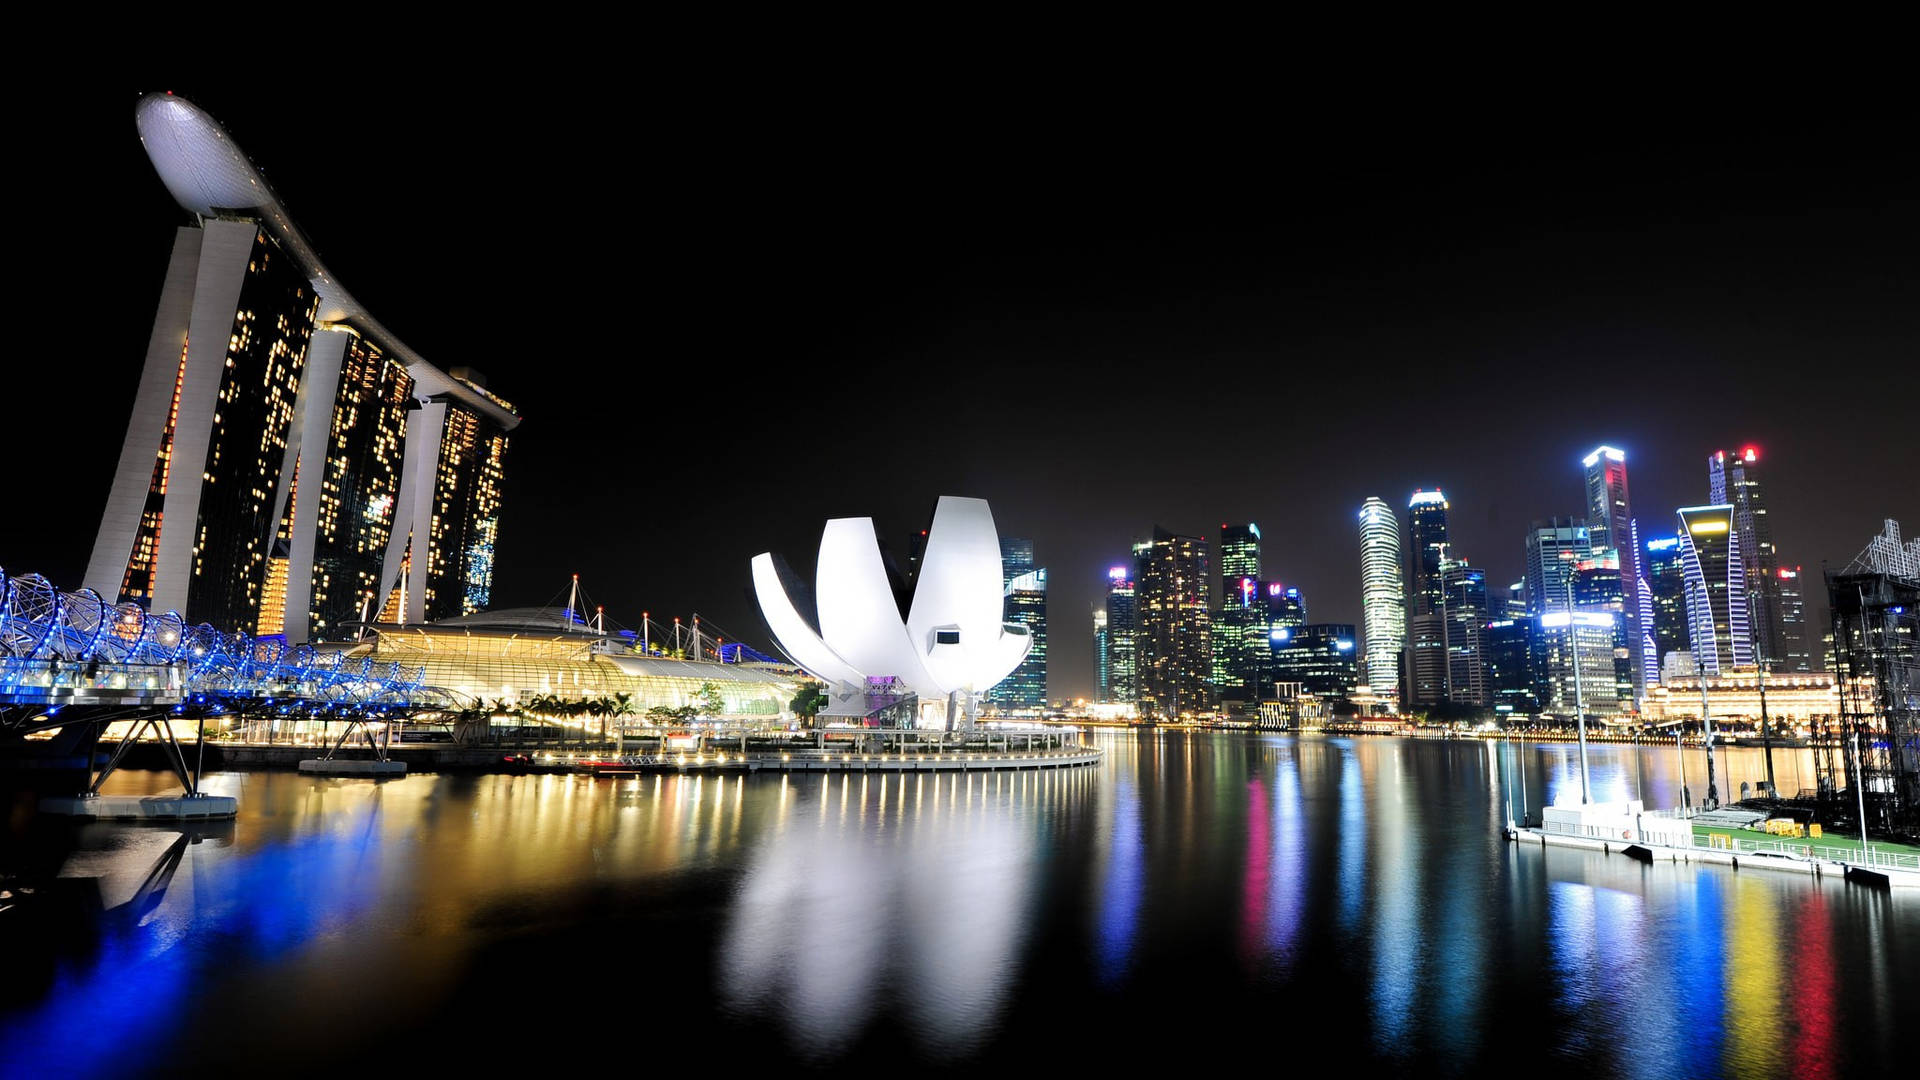 Marina Bay Sands Singapore City At Night Wallpaper